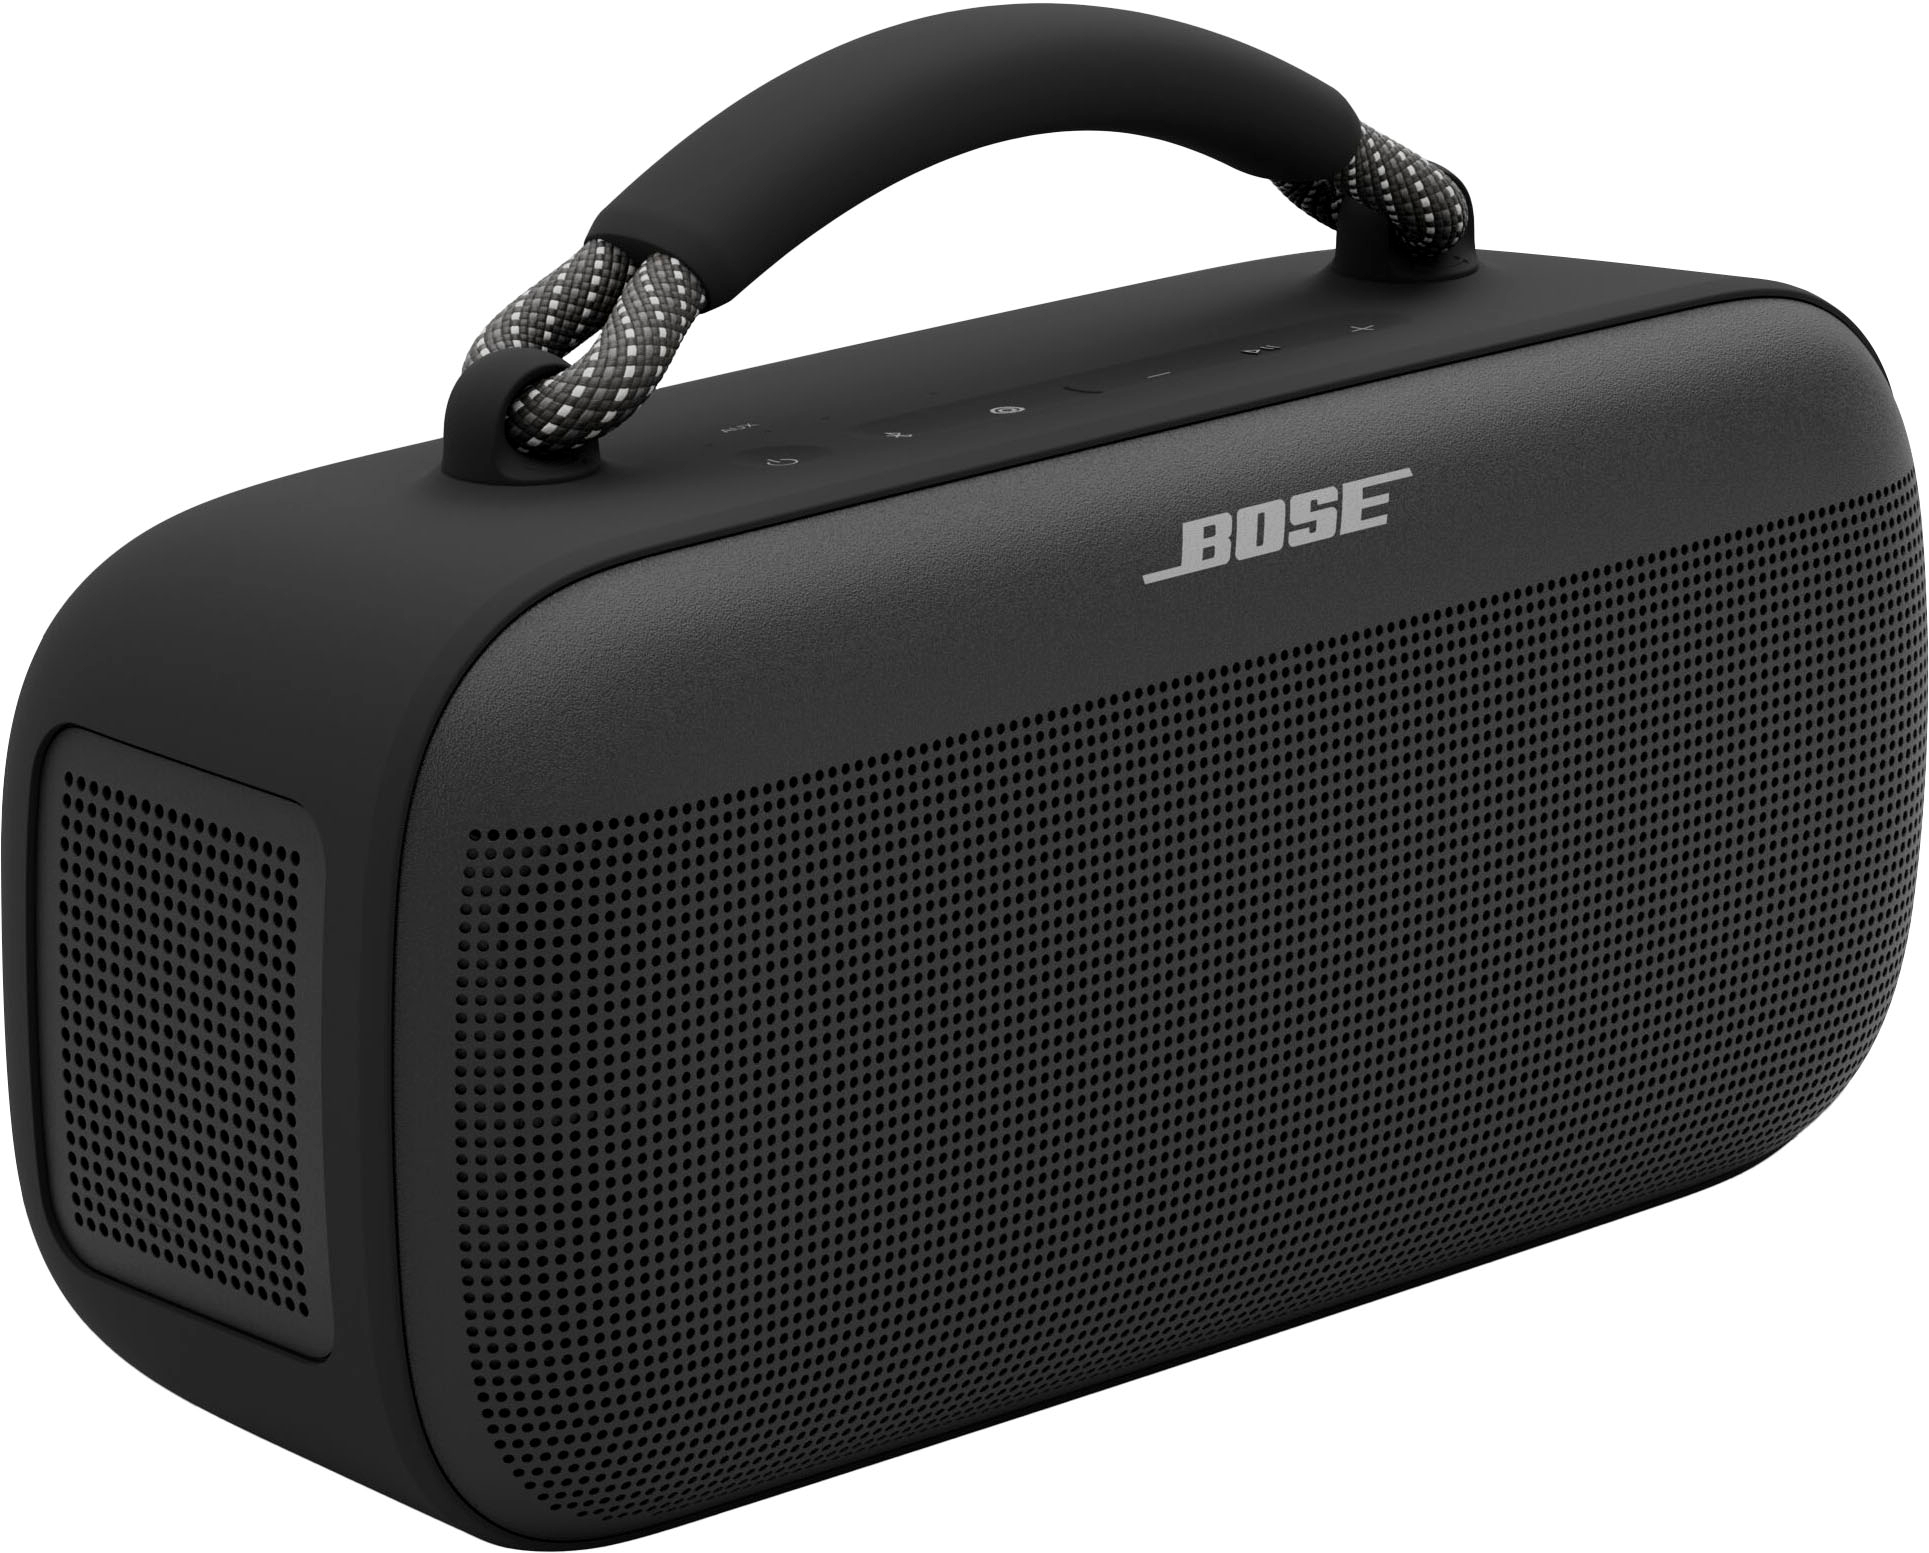 Bose SoundLink Max Portable Bluetooth Speaker Black 883848-0100 